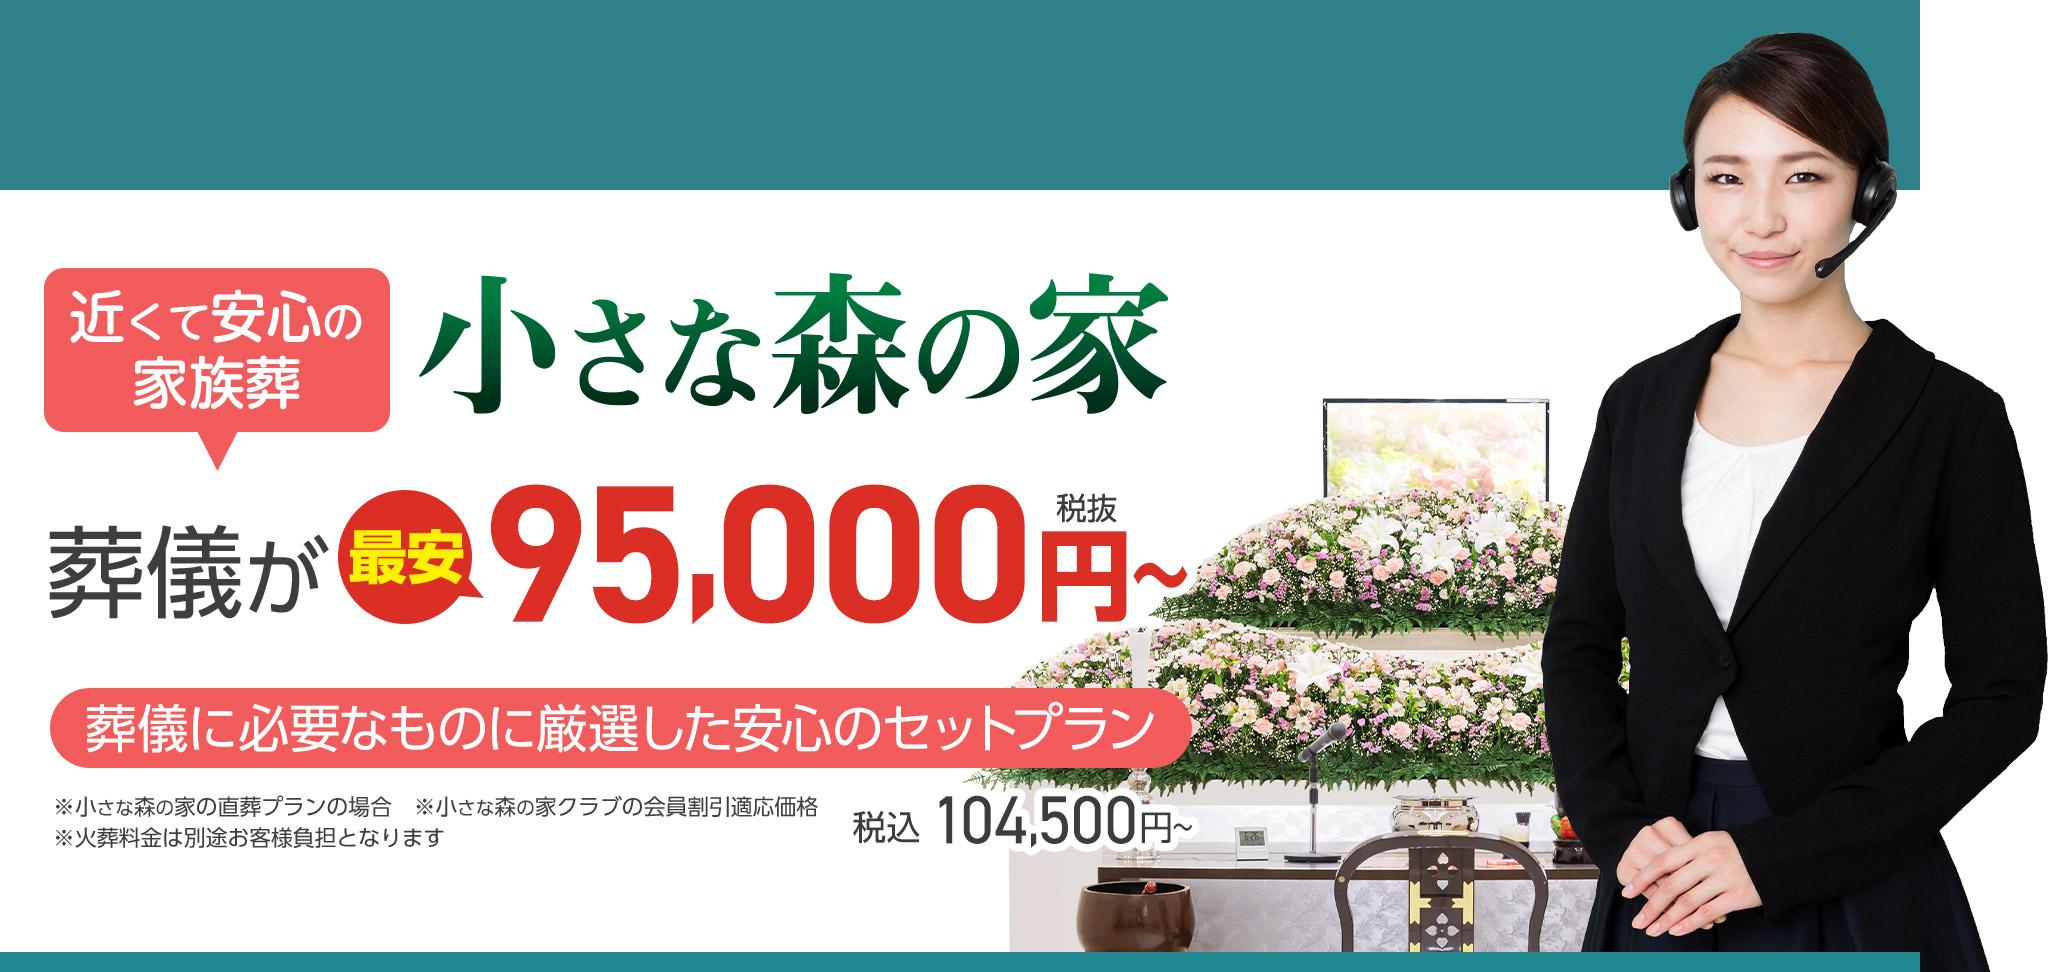 野田市で家族葬をお探しなら小さな森の家 近くて安心の葬儀・家族葬がWEB限定税抜95,000円